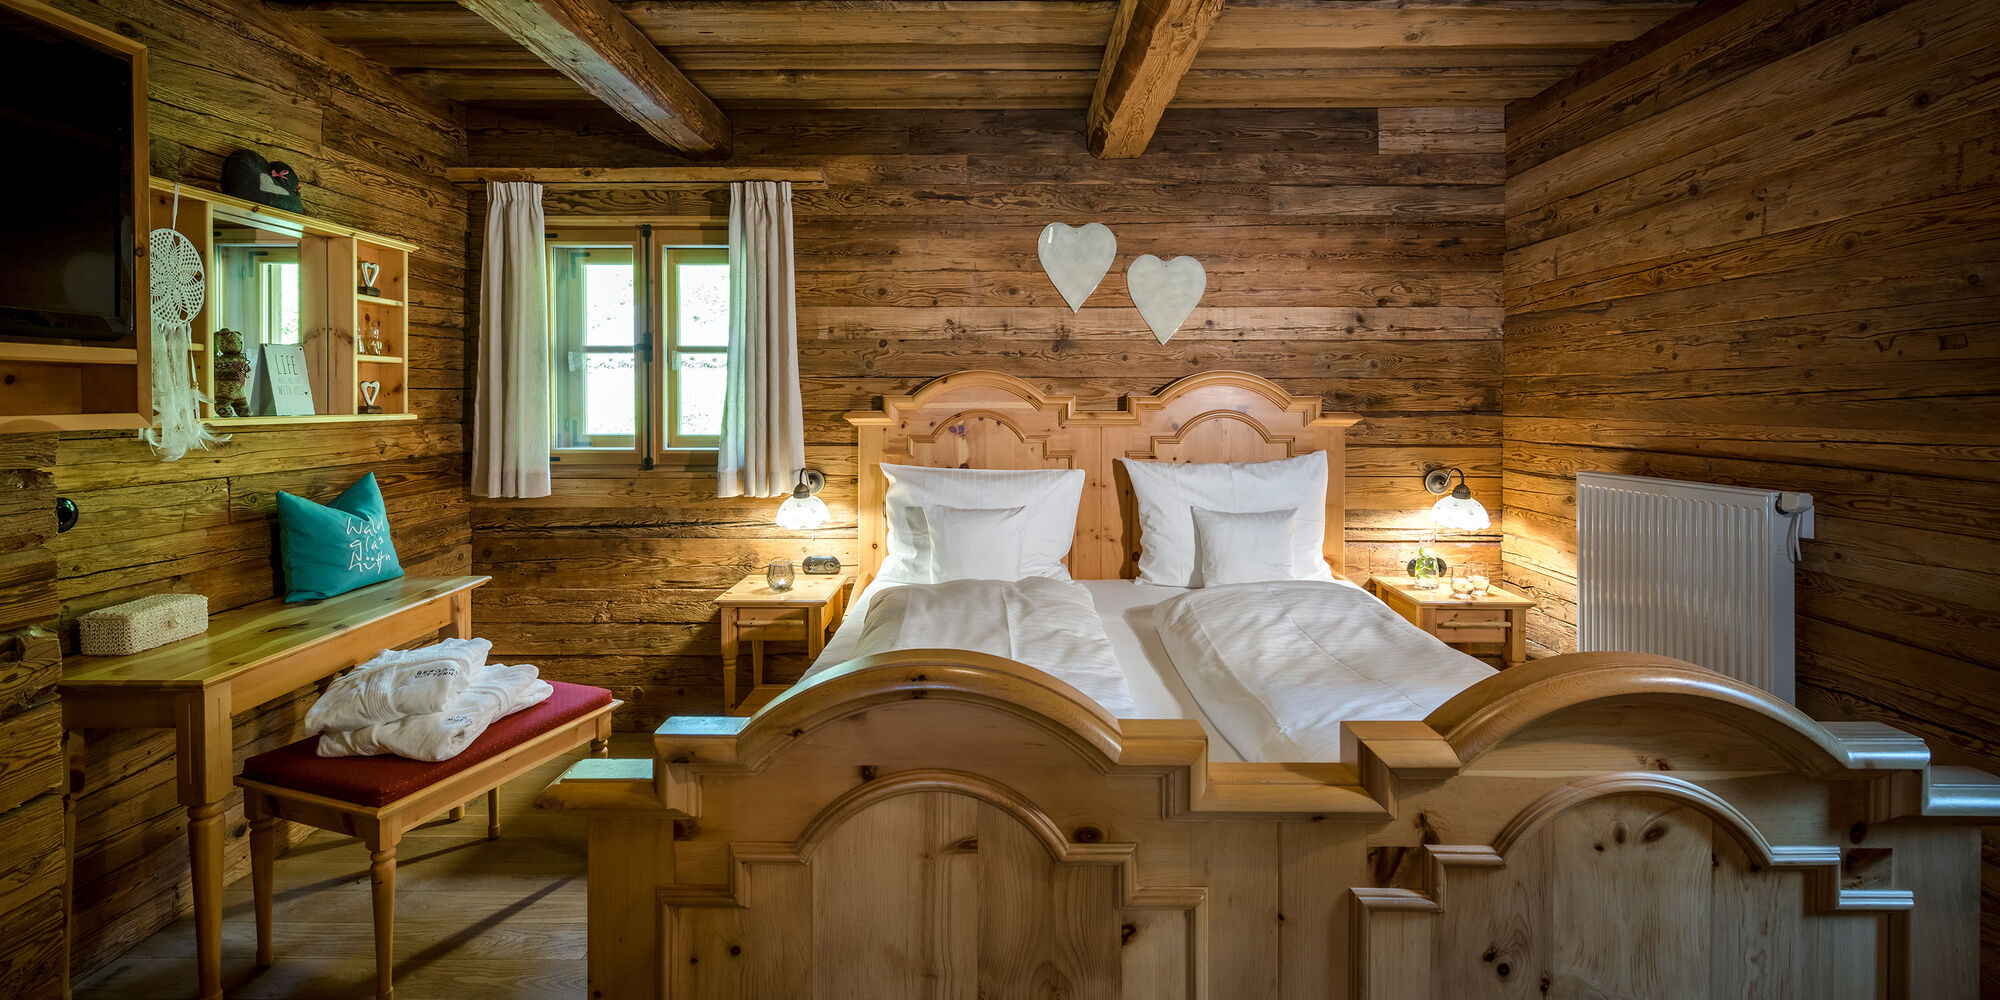 Schlafzimmer im Luxus Chalet Bayerischer Wald mit Romantik Deko